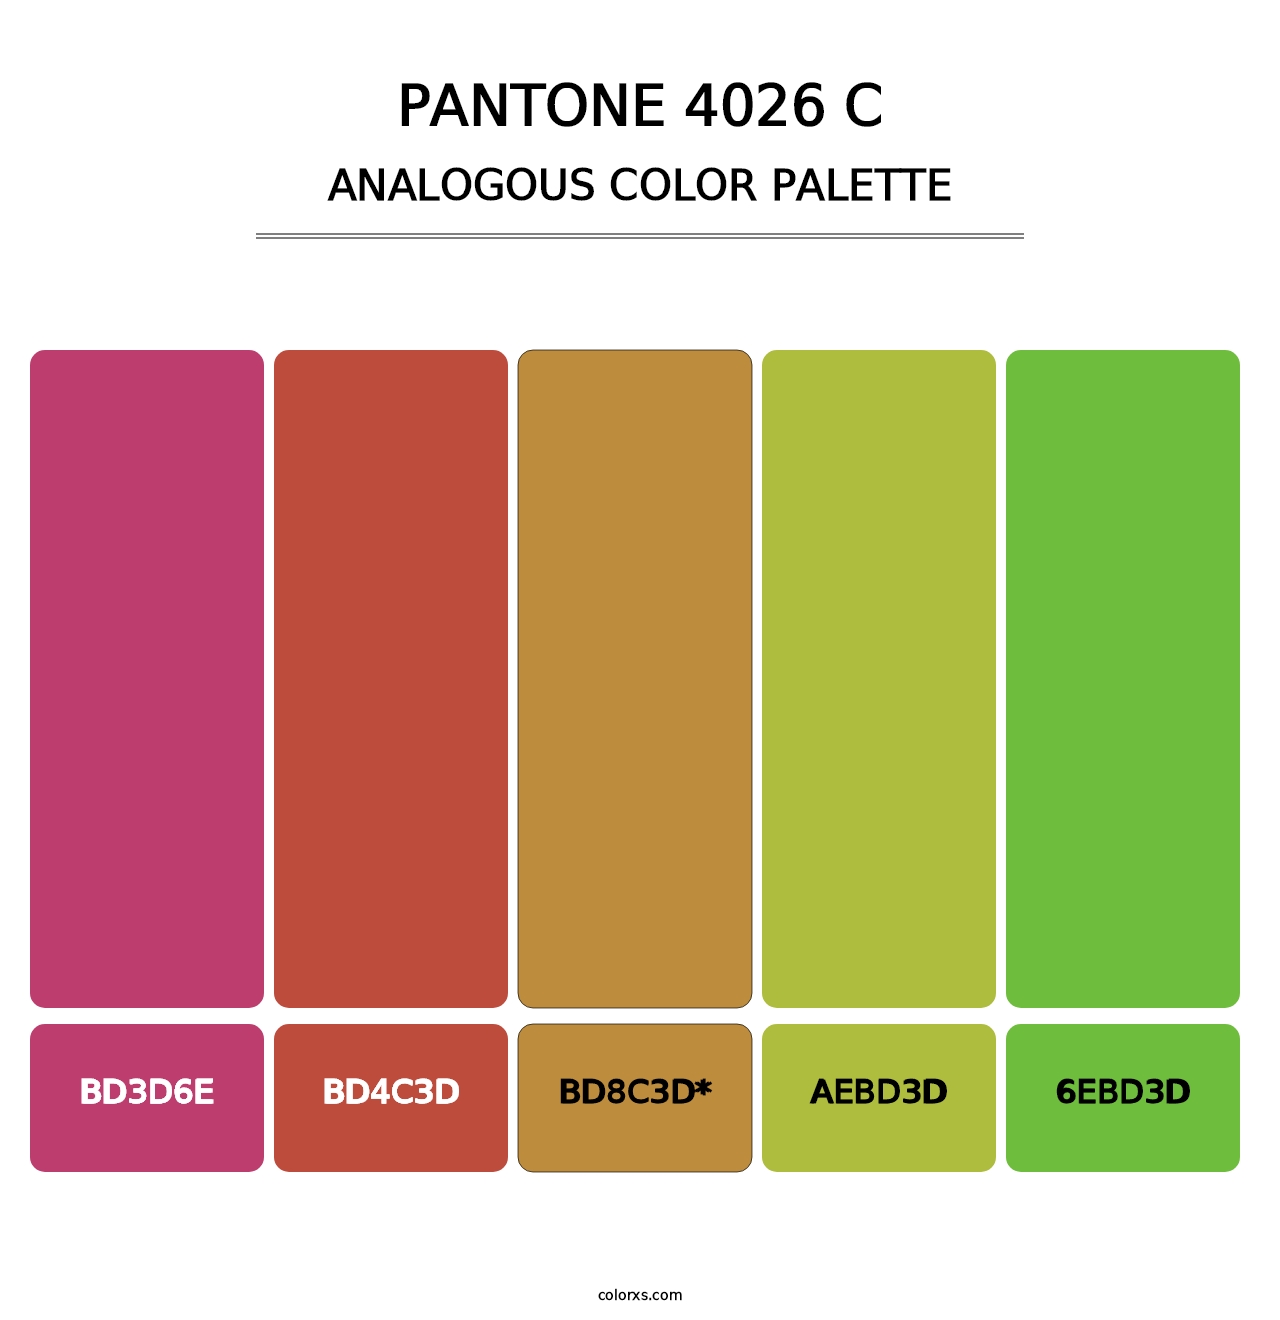 PANTONE 4026 C - Analogous Color Palette